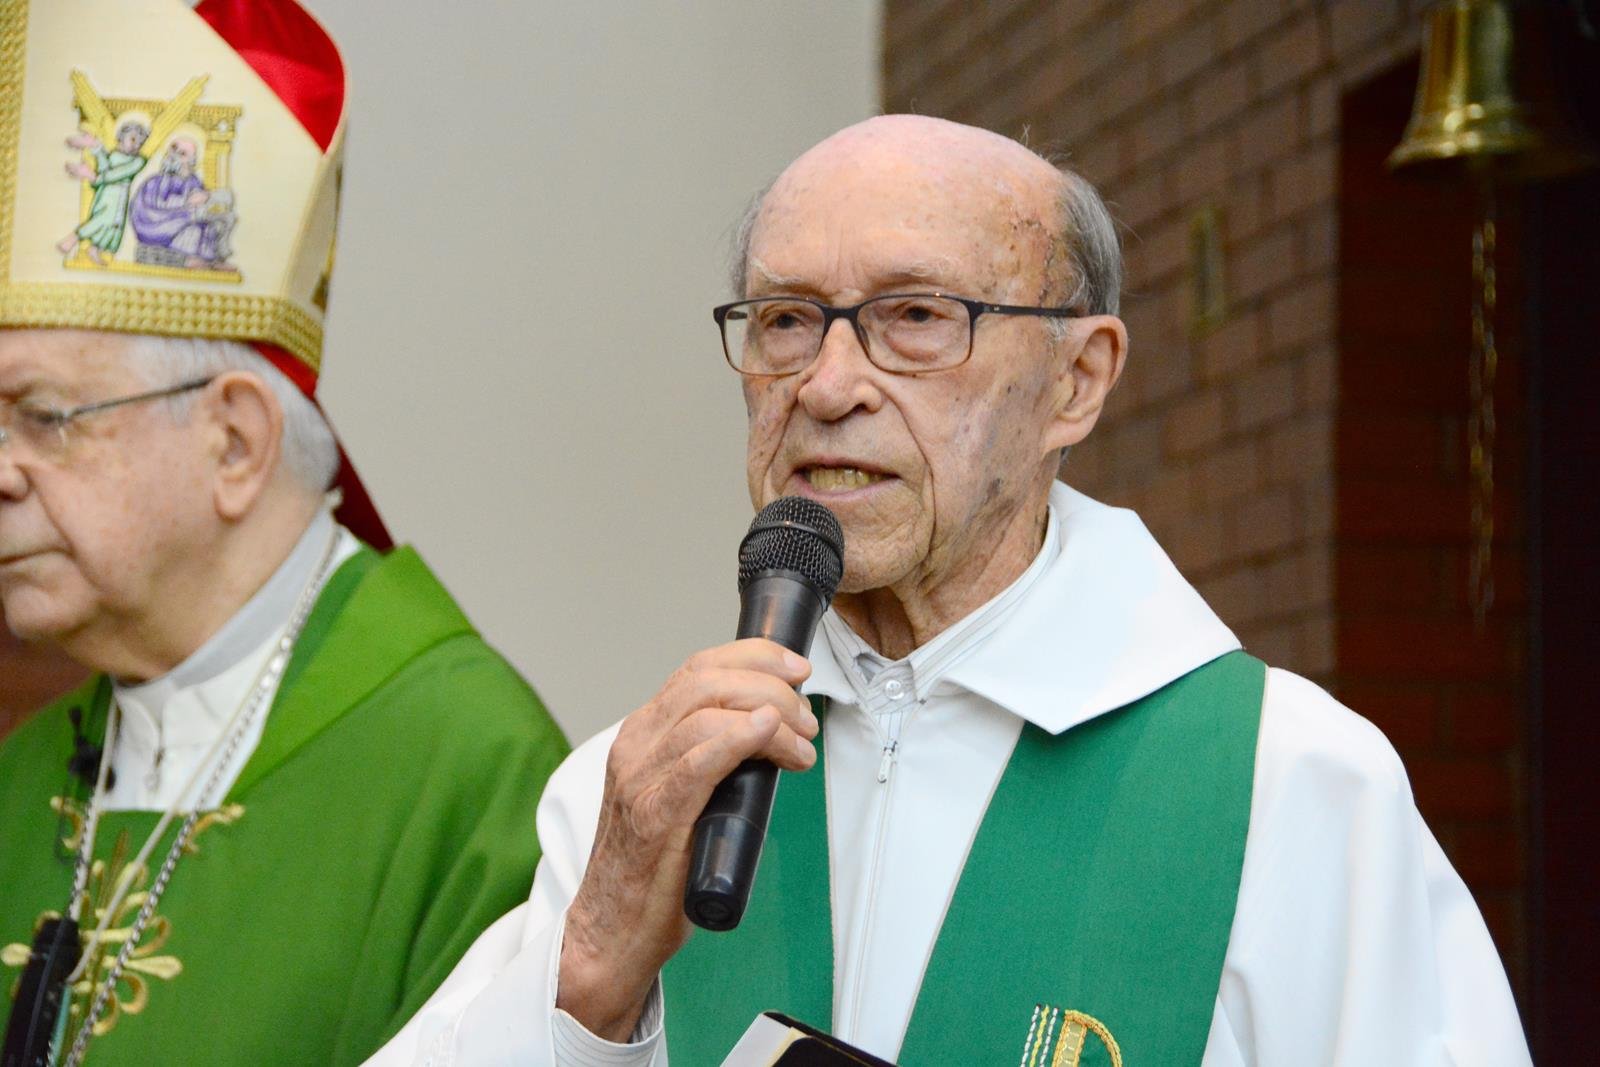 Padre Lino comemora 62 anos de sacerdócio